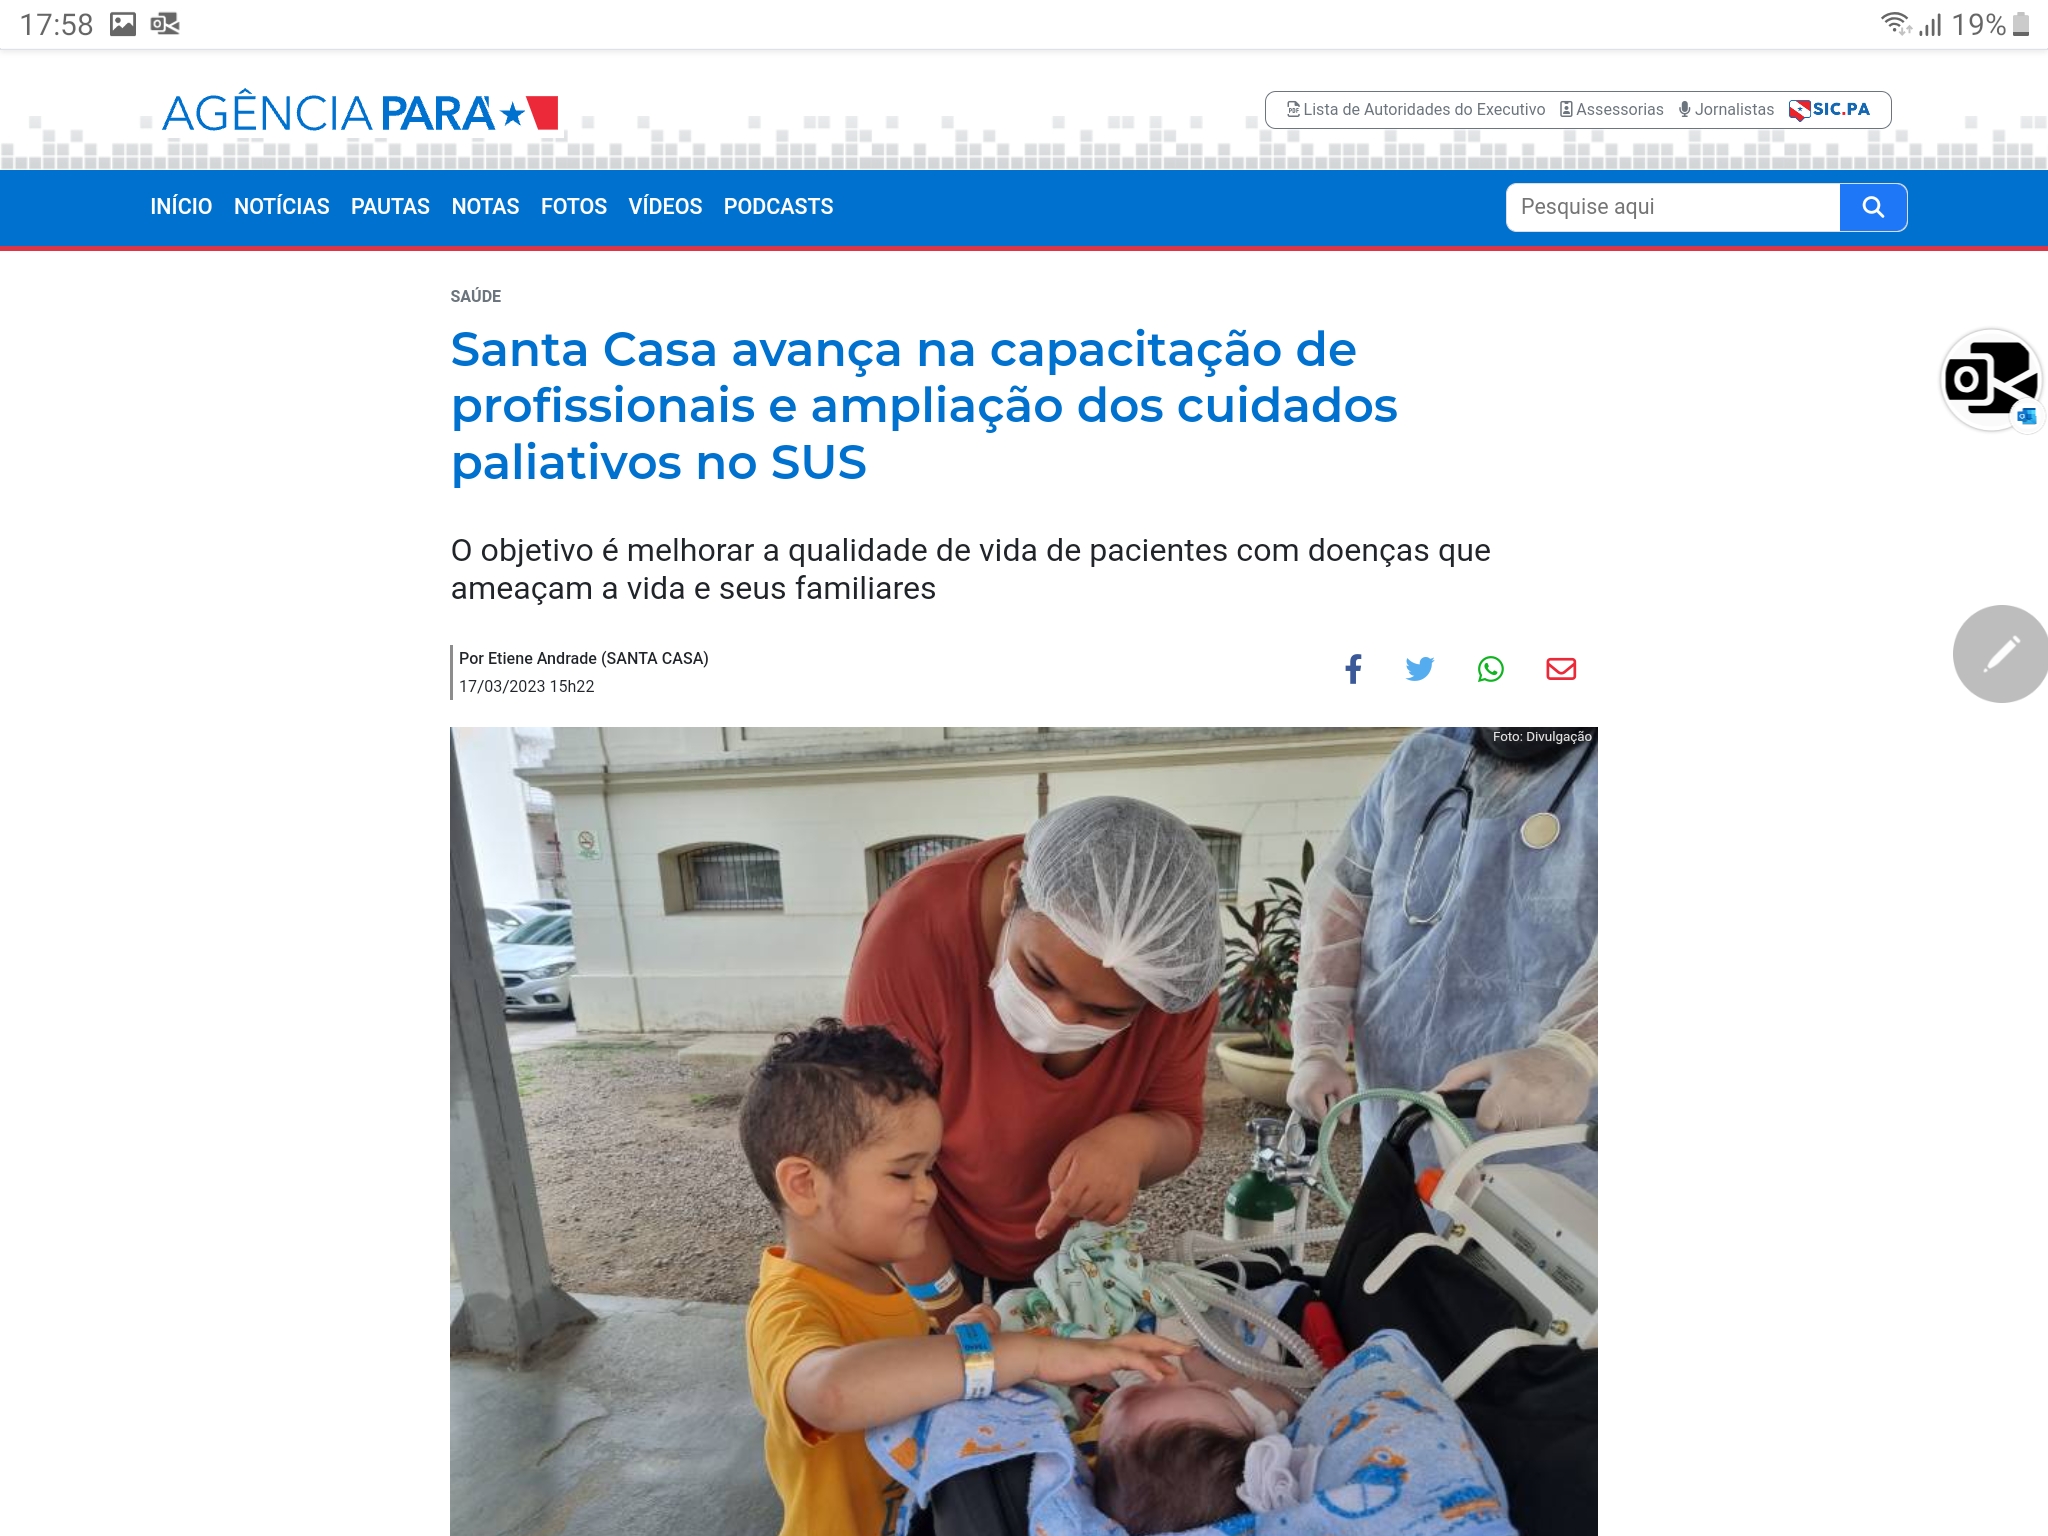 Santa Casa avança na capacitação de profissionais e ampliação dos cuidados paliativos no SUS